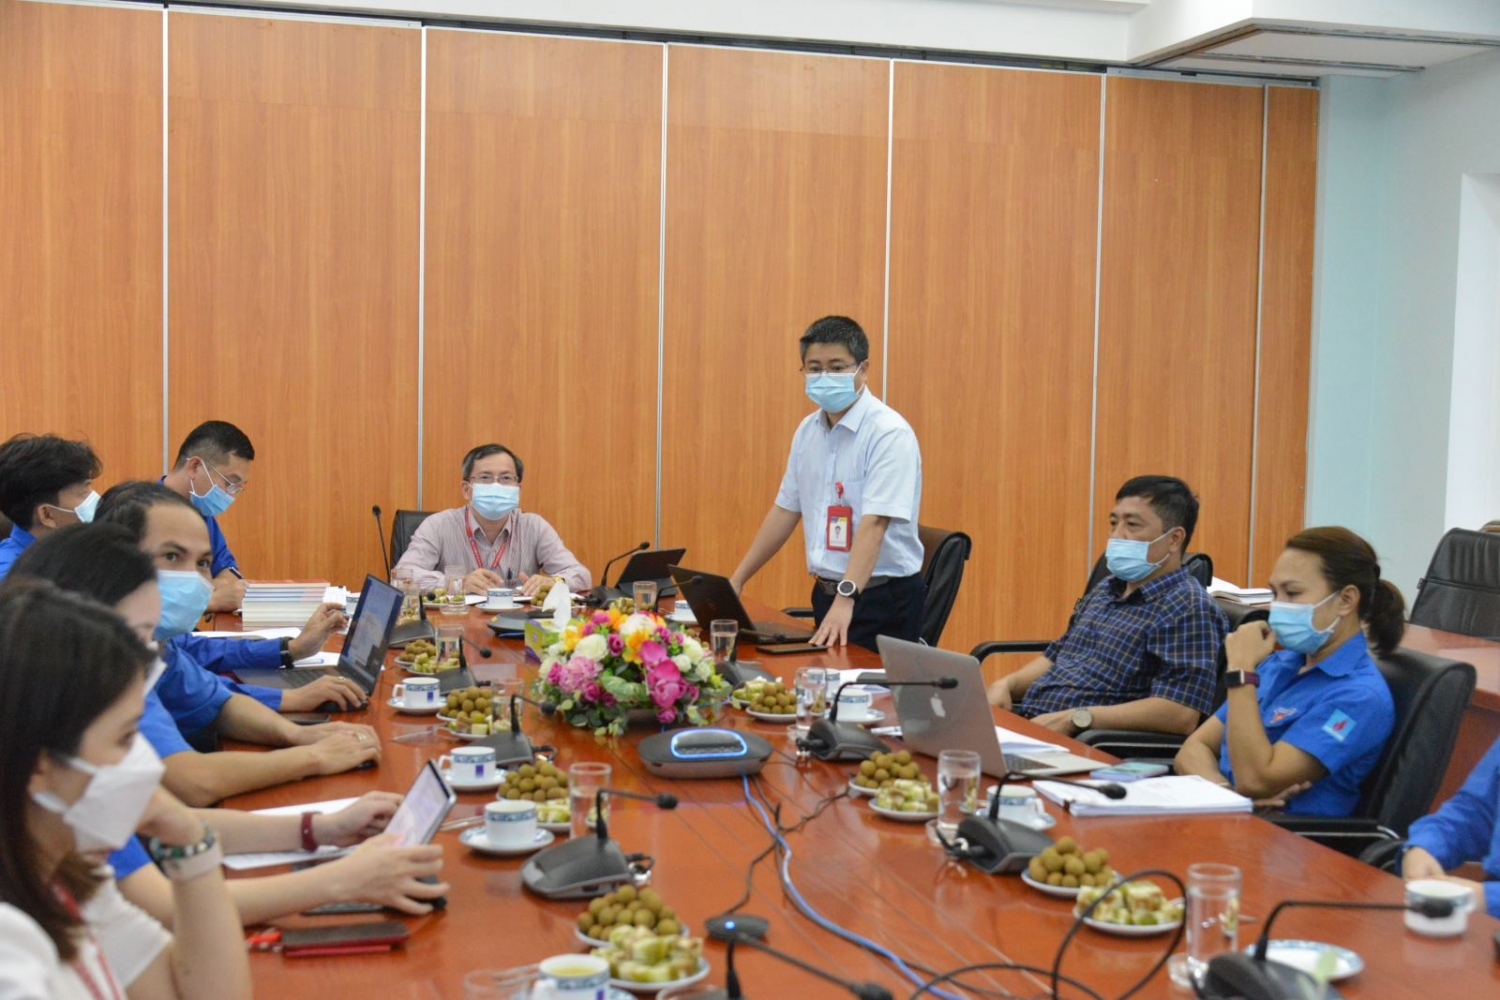 Đoàn Thanh niên BSR tổ chức Lễ mitting Kỷ niệm 91 năm ngày thành lập Đoàn TNCS Hồ Chí Minh